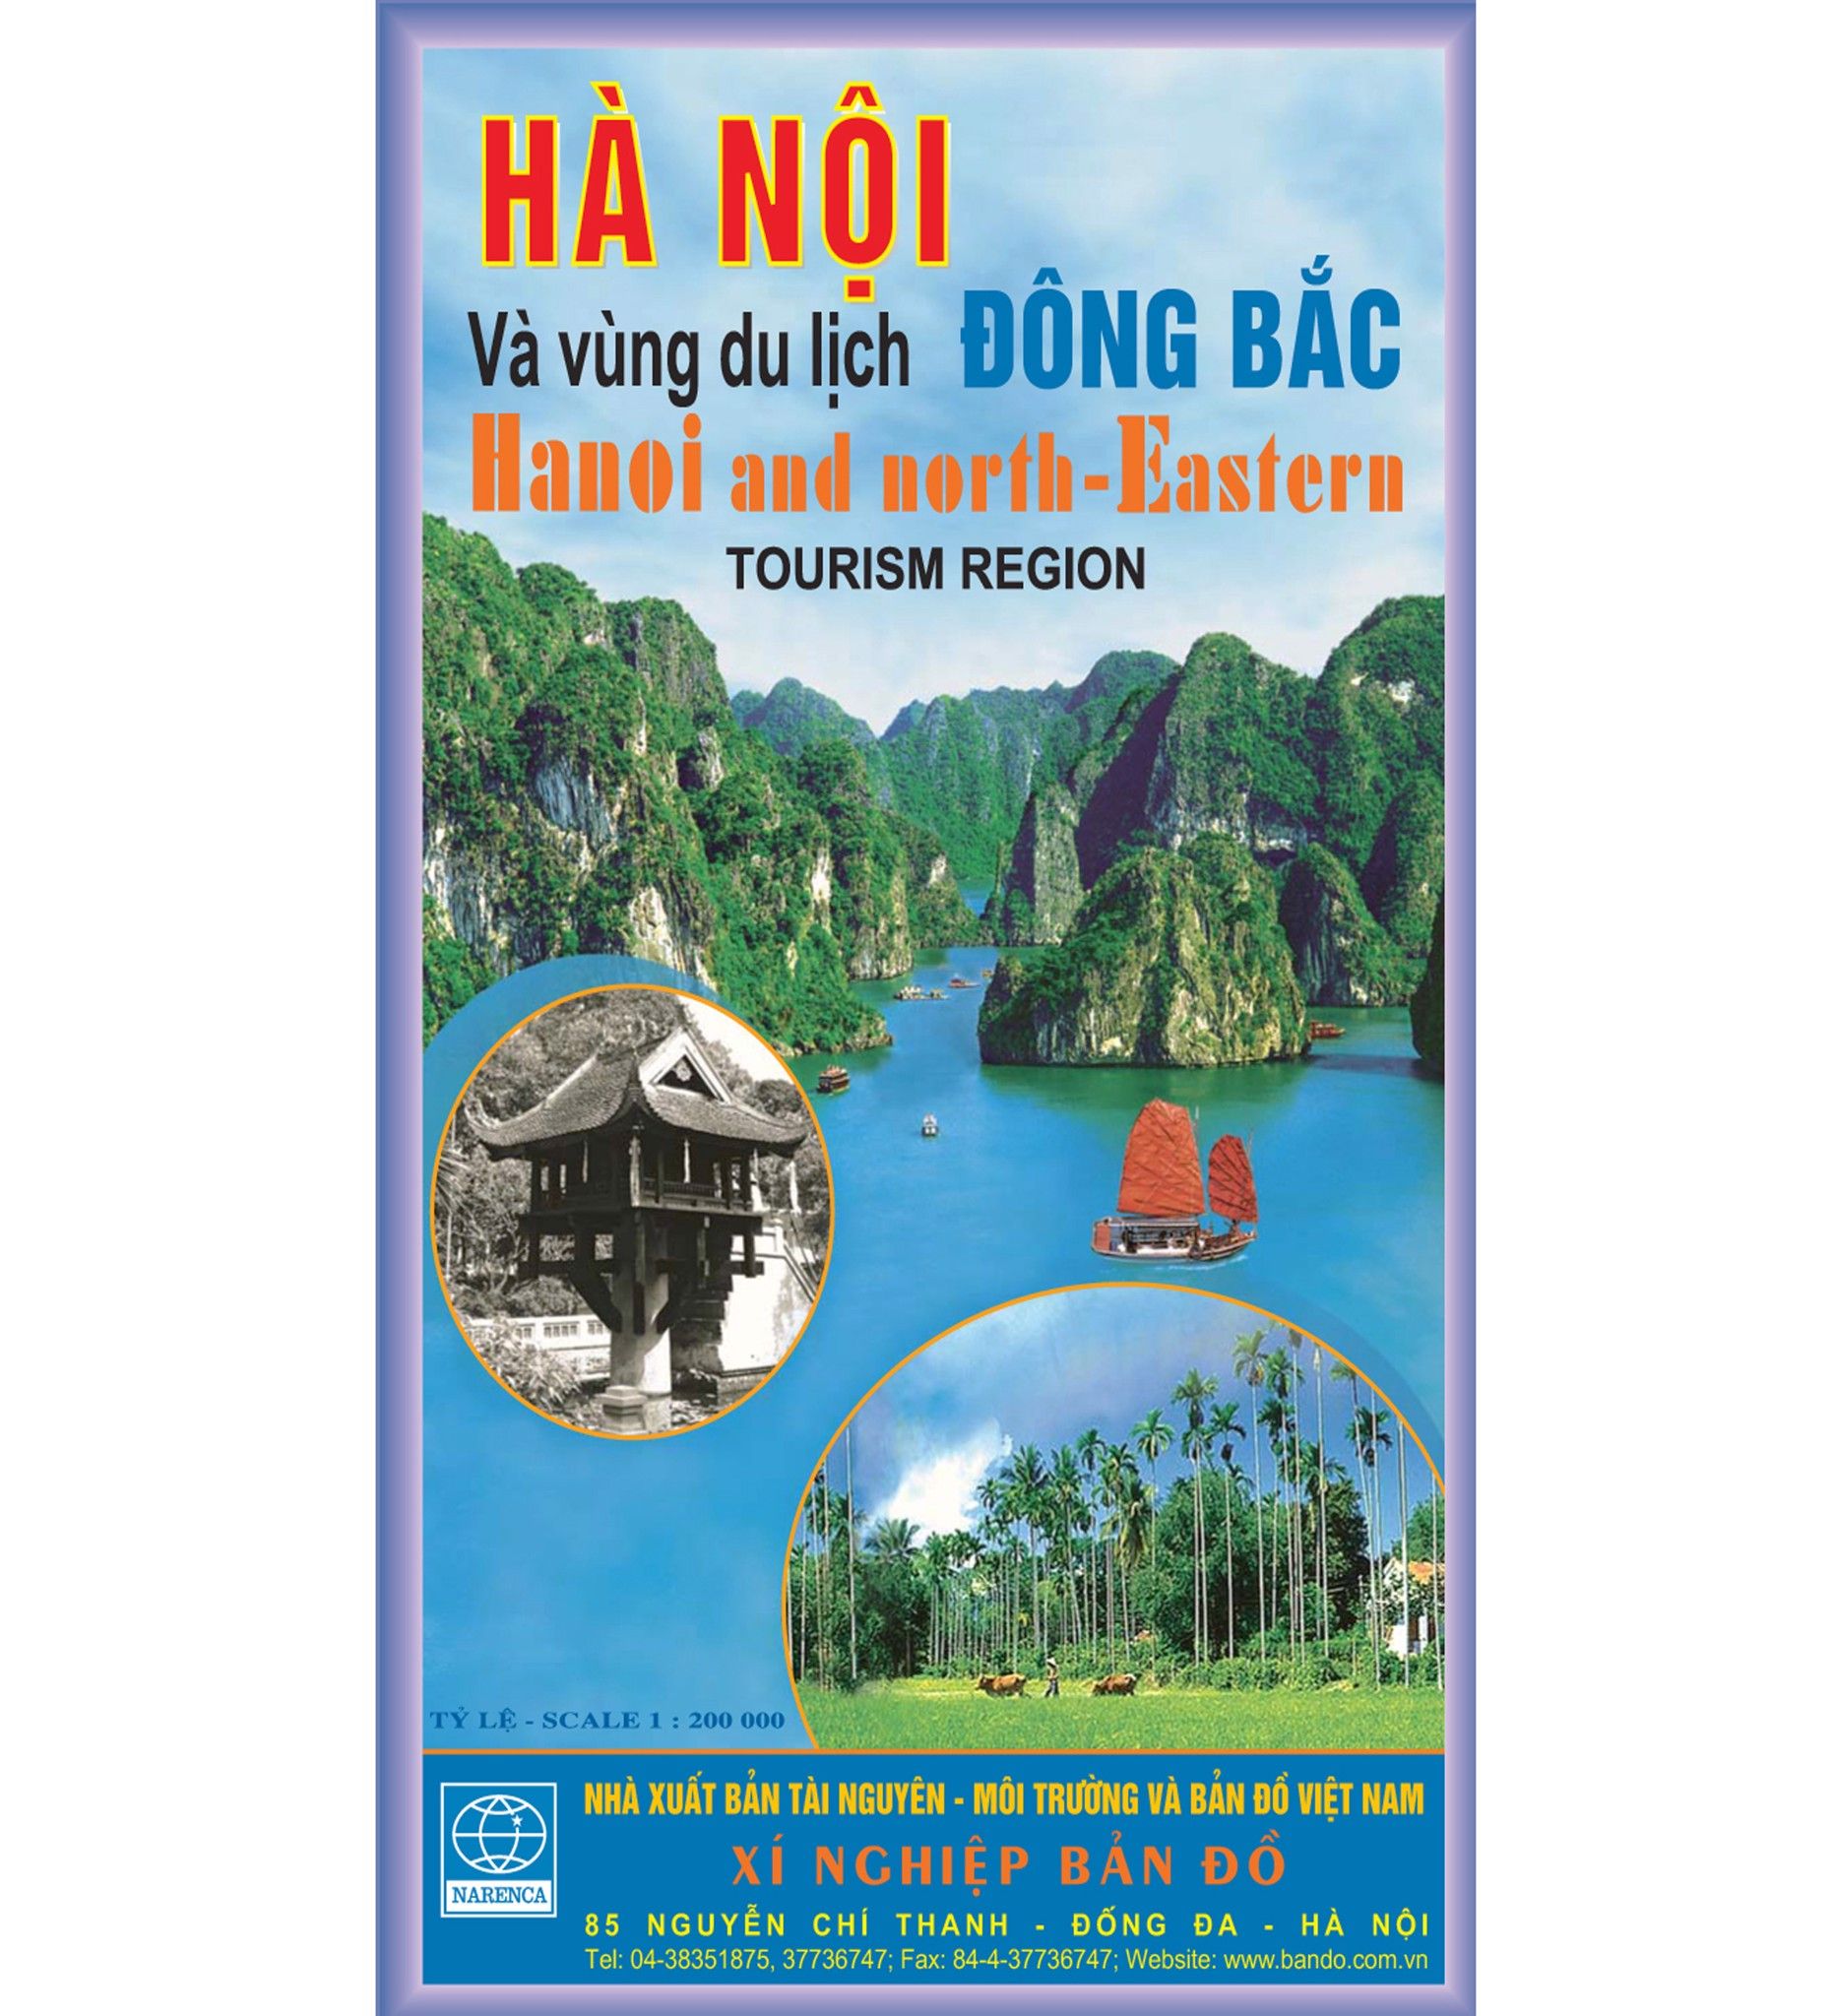 Du lịch Đông Bắc: Đông Bắc Việt Nam chắc chắn là một điểm đến hấp dẫn cho các tín đồ du lịch. Với những vùng núi, suối, thác và cảnh quan thiên nhiên hoang sơ, đây chắc chắn là một trải nghiệm tuyệt vời dành cho những ai yêu thích thiên nhiên và muốn khám phá vùng đất mới lạ.